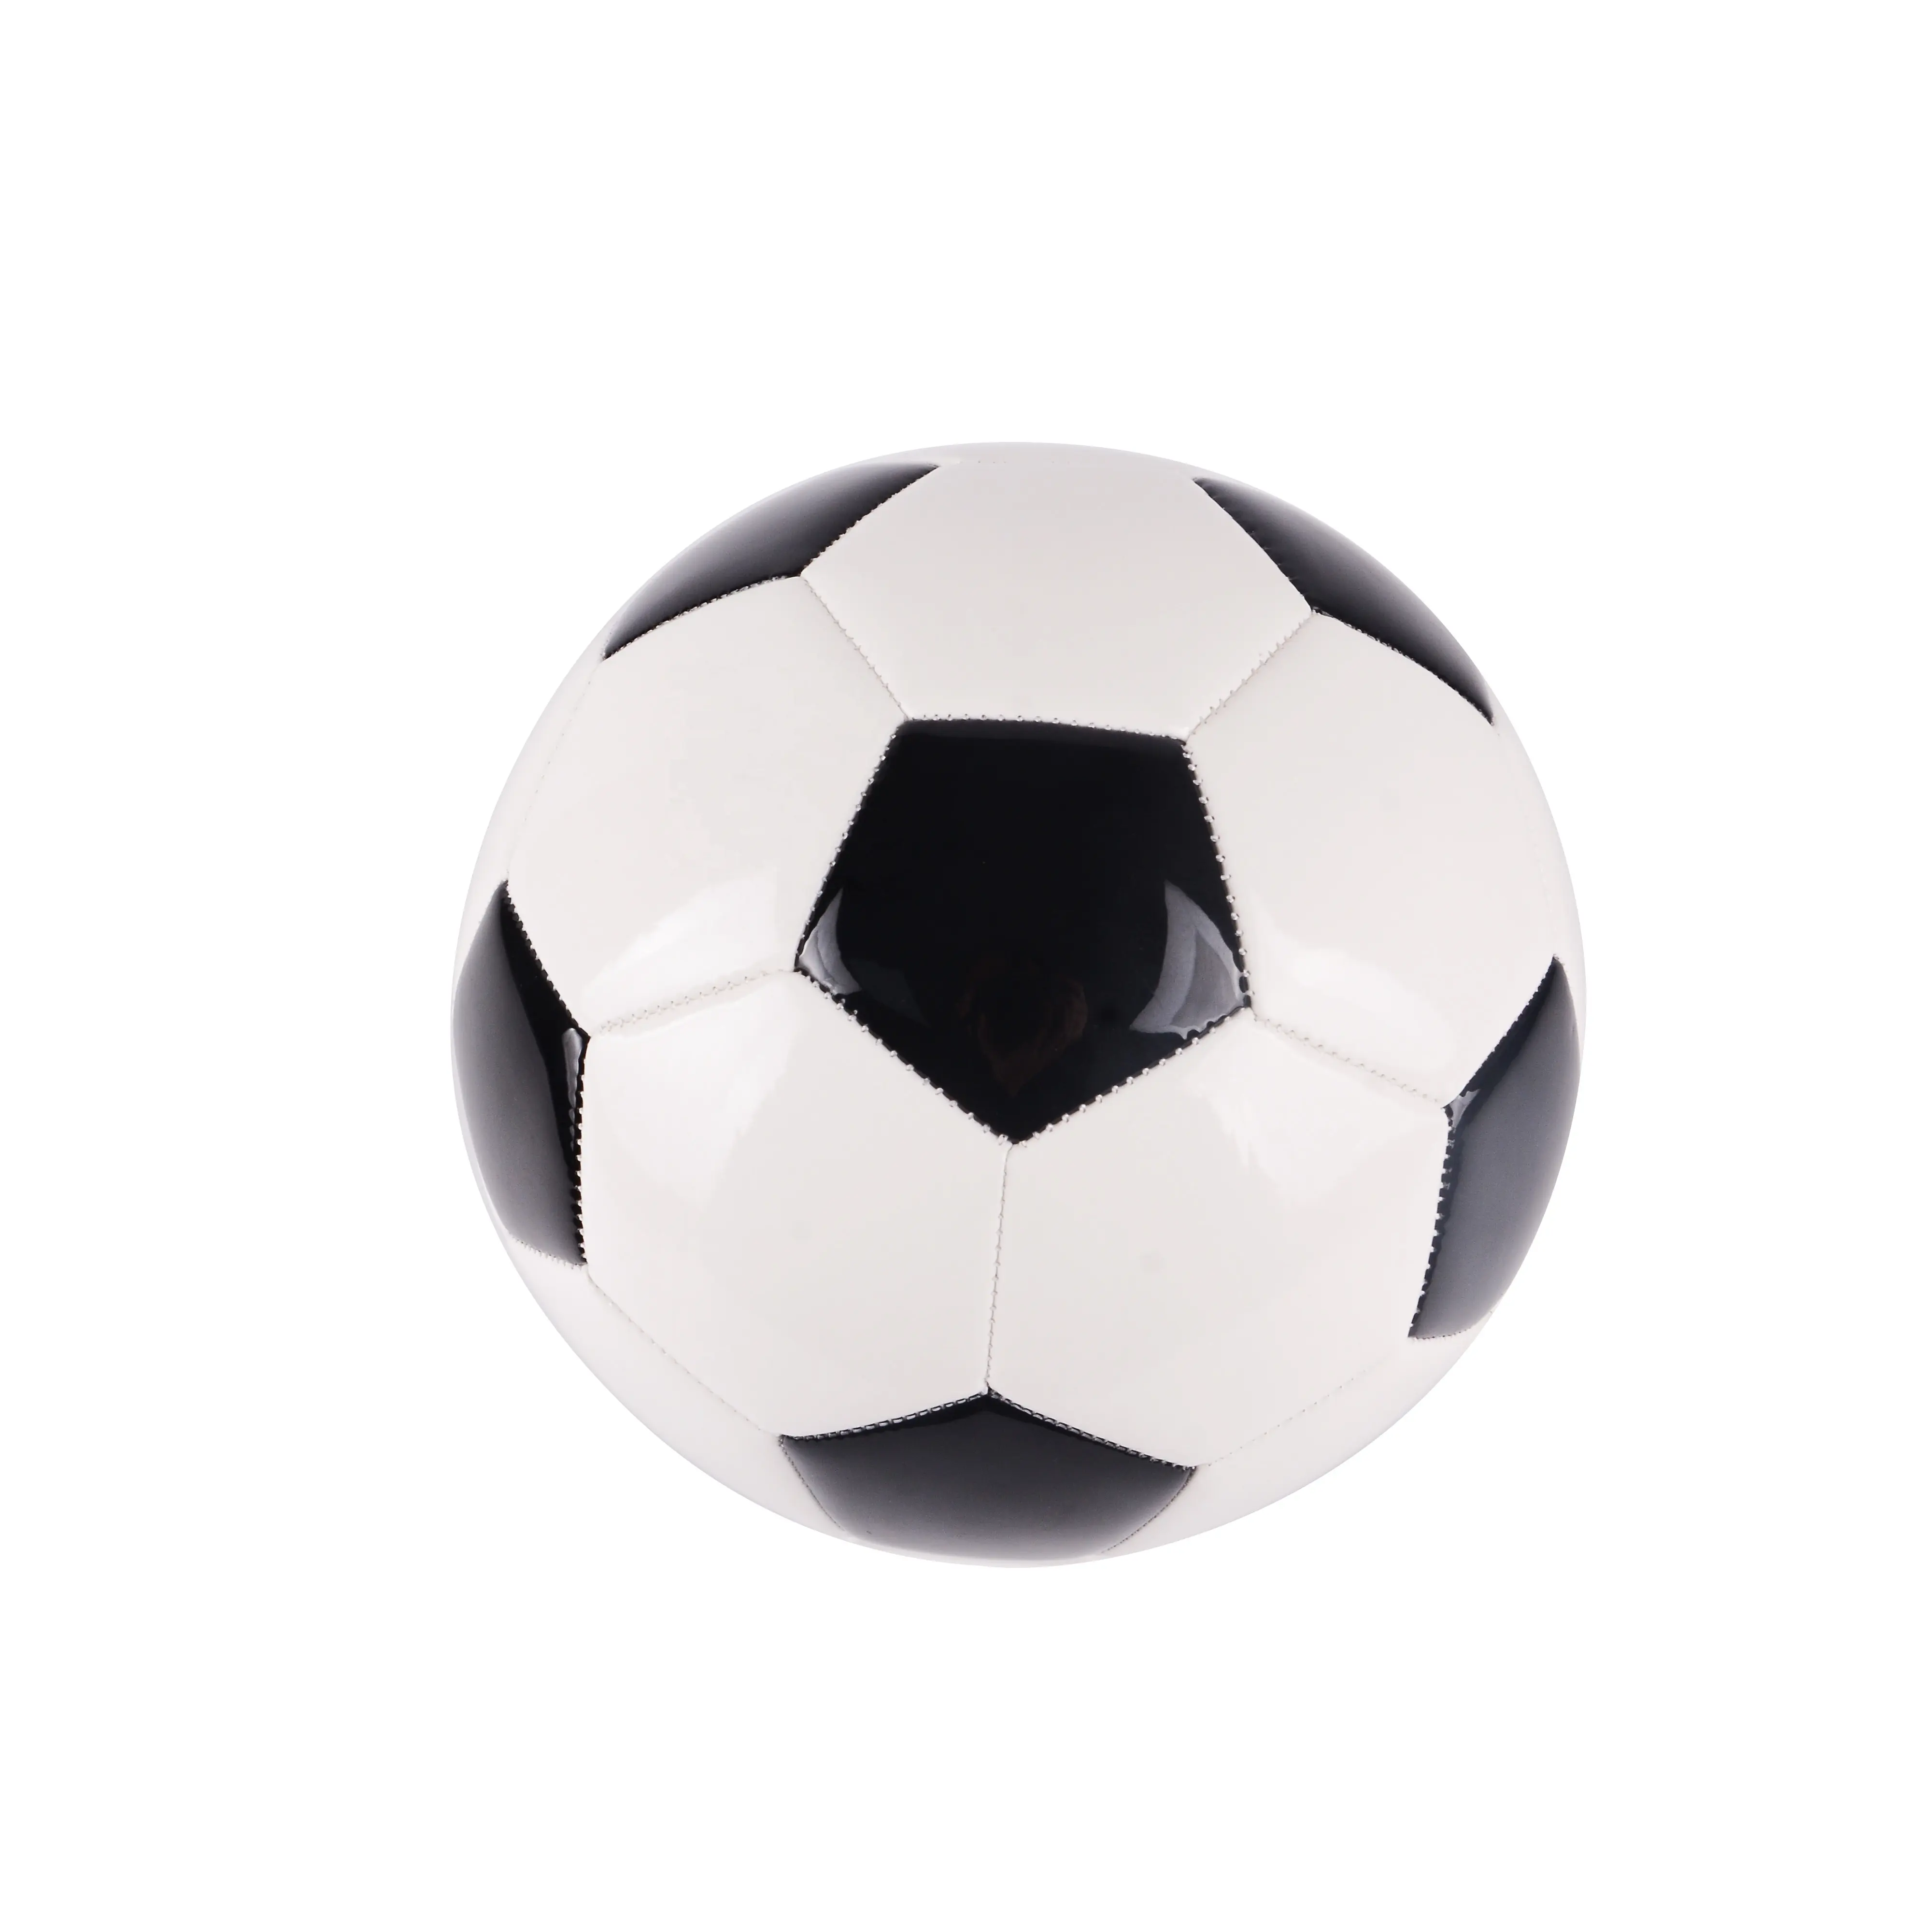 Balón de fútbol cosido a máquina proporcionado personalizado de fábrica, tamaño 4/5 entrenamiento/juego de fútbol, balón de fútbol de PVC/PU para interior y exterior